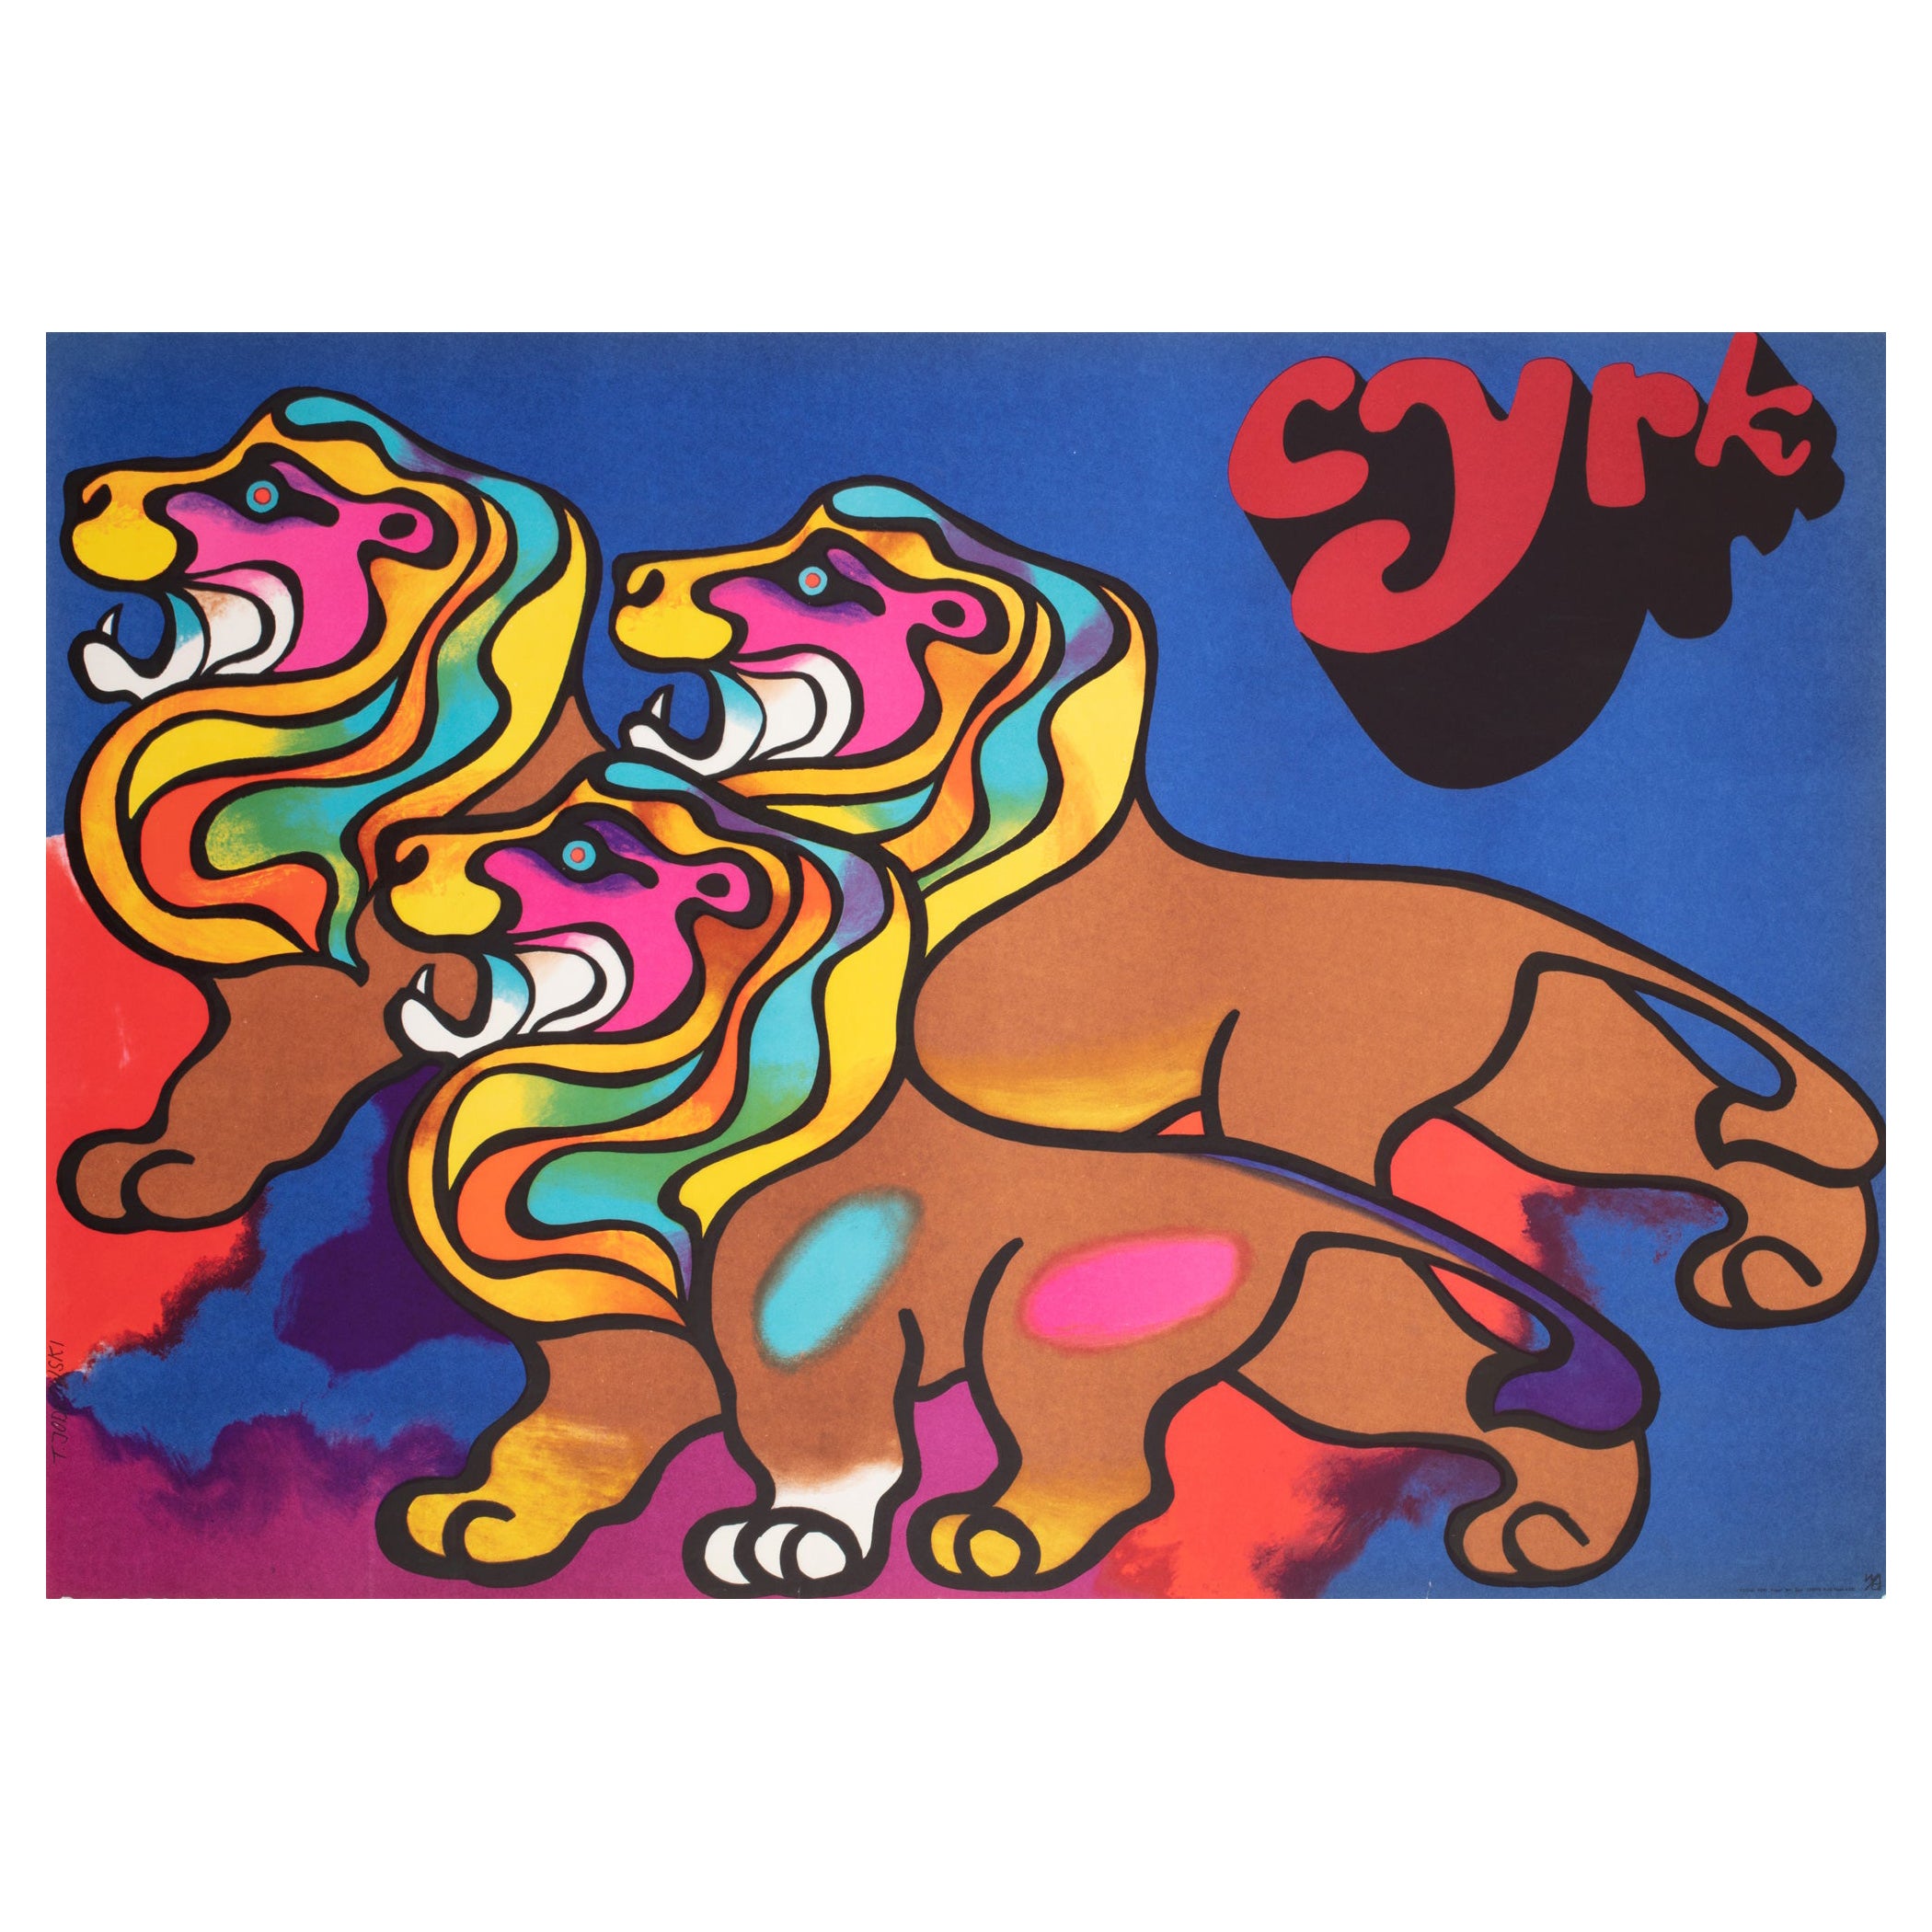 Cyrk Polish Circus Poster 3 Lions 1970, Jodlowski